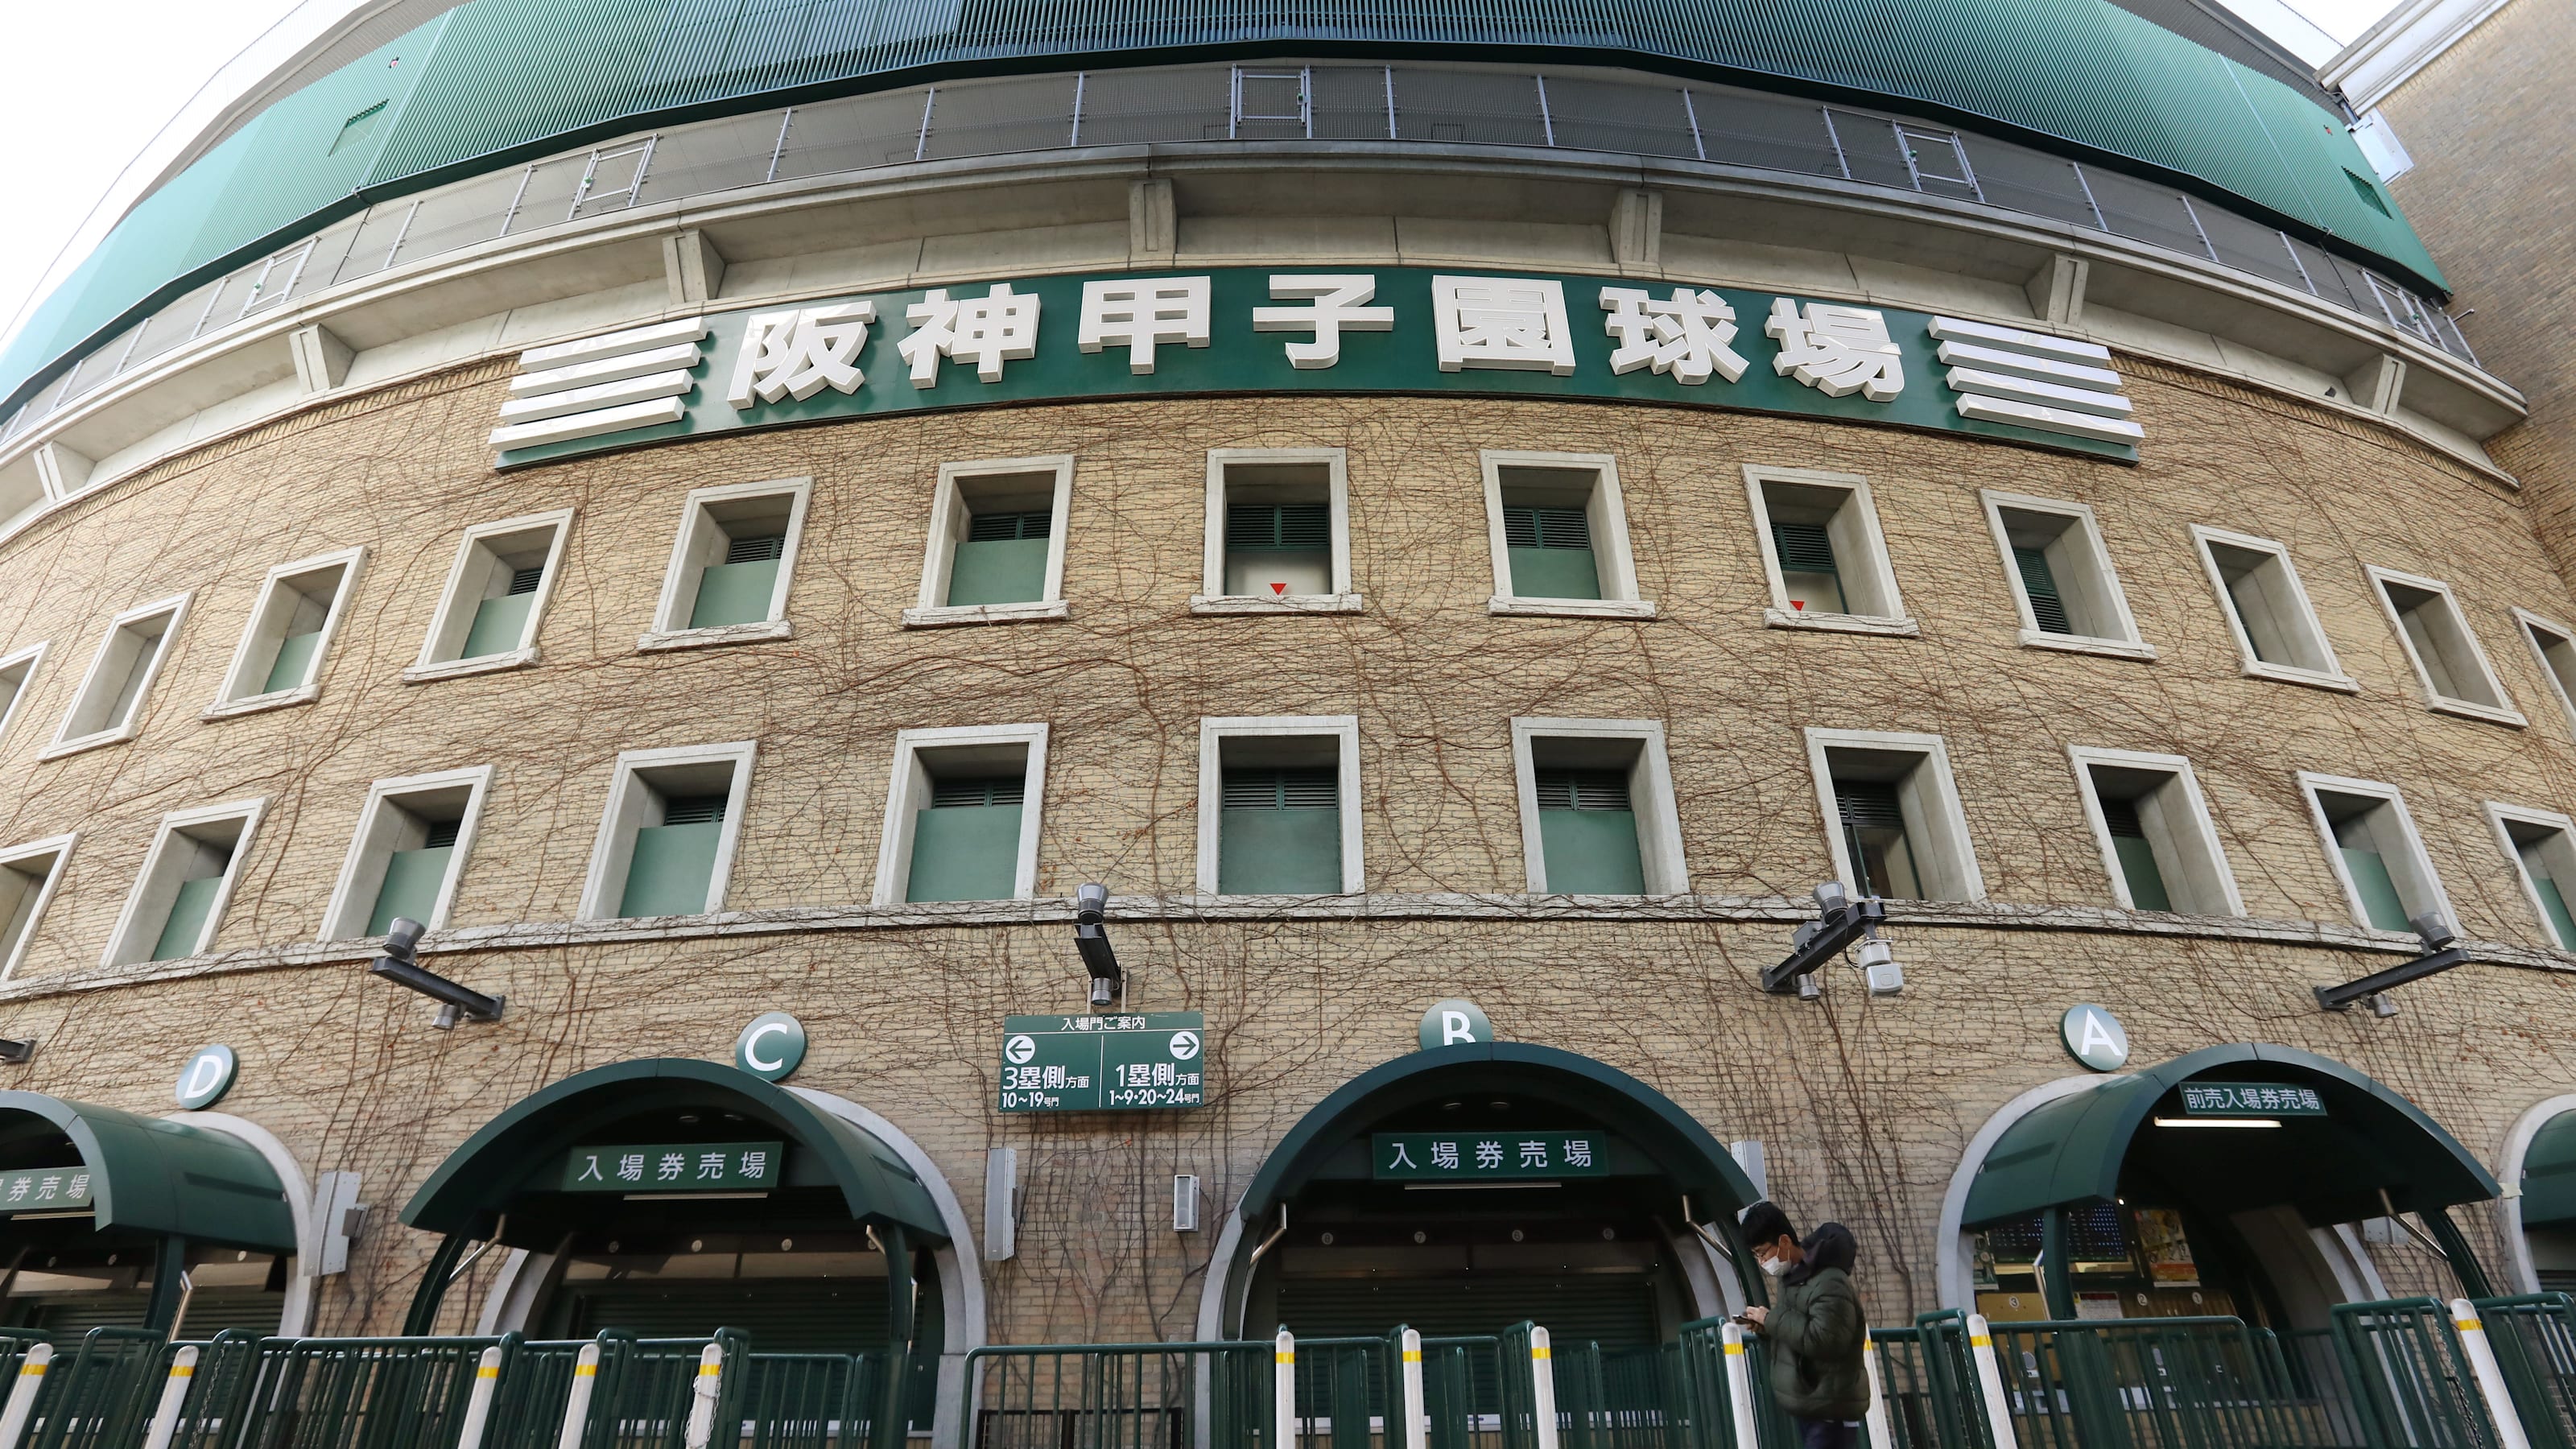 4月6日 火 プロ野球の日程と放送予定 予告先発 阪神は今季初めて甲子園で主催試合